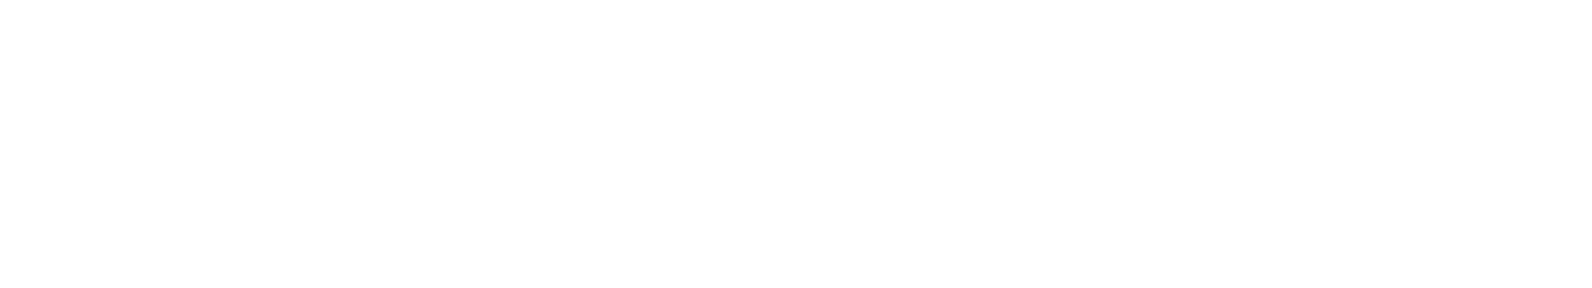 Persimmon logo grand pour les fonds sombres (PNG transparent)